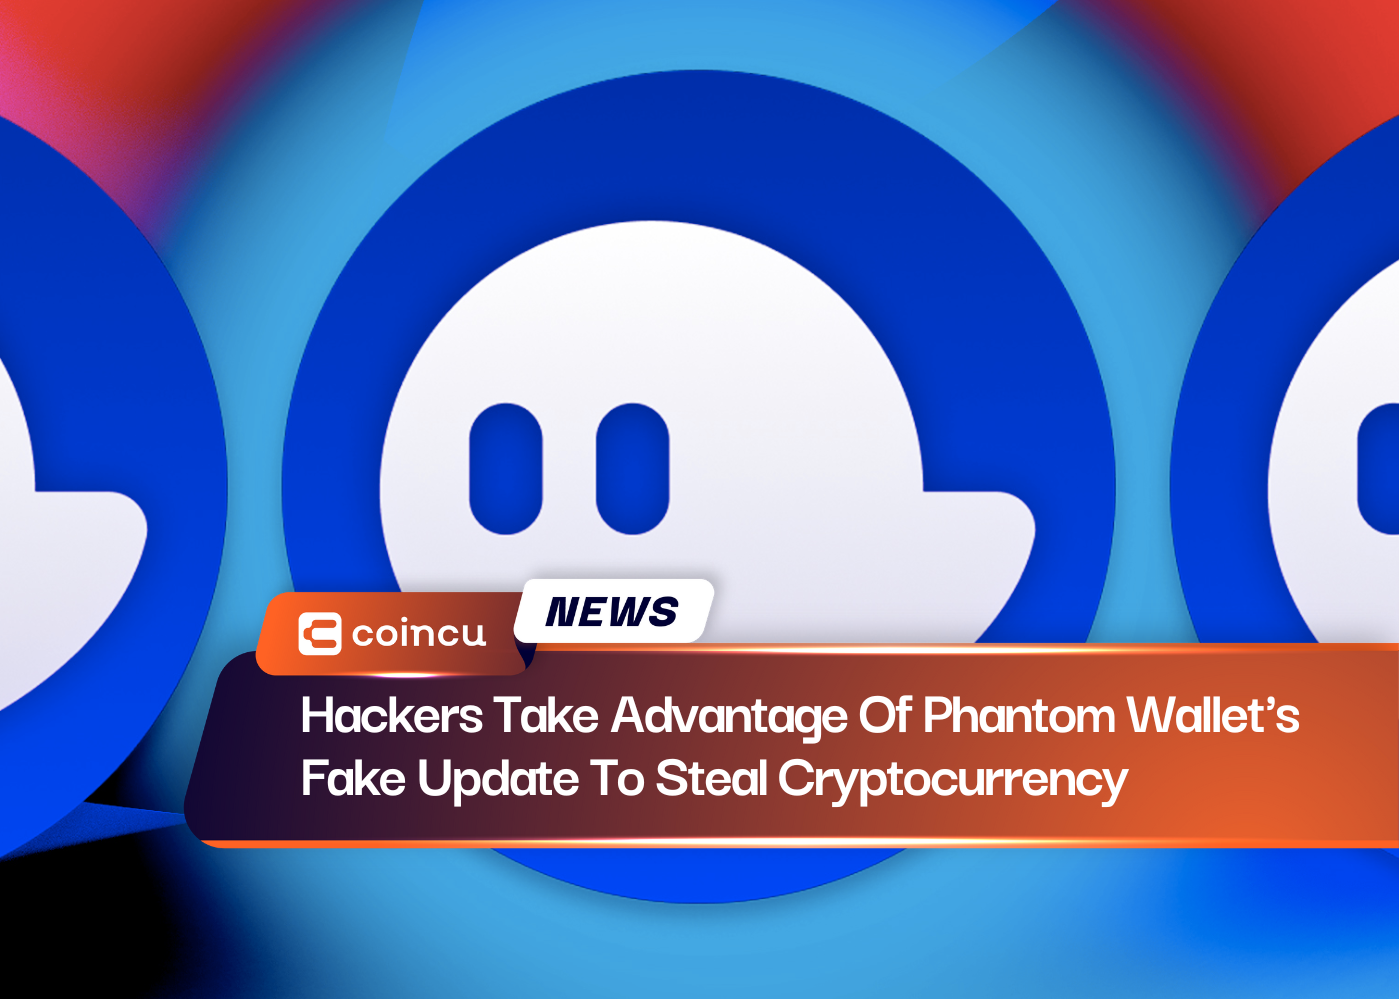 Hacker nutzen das gefälschte Update von Phantom Wallet aus, um Kryptowährung zu stehlen